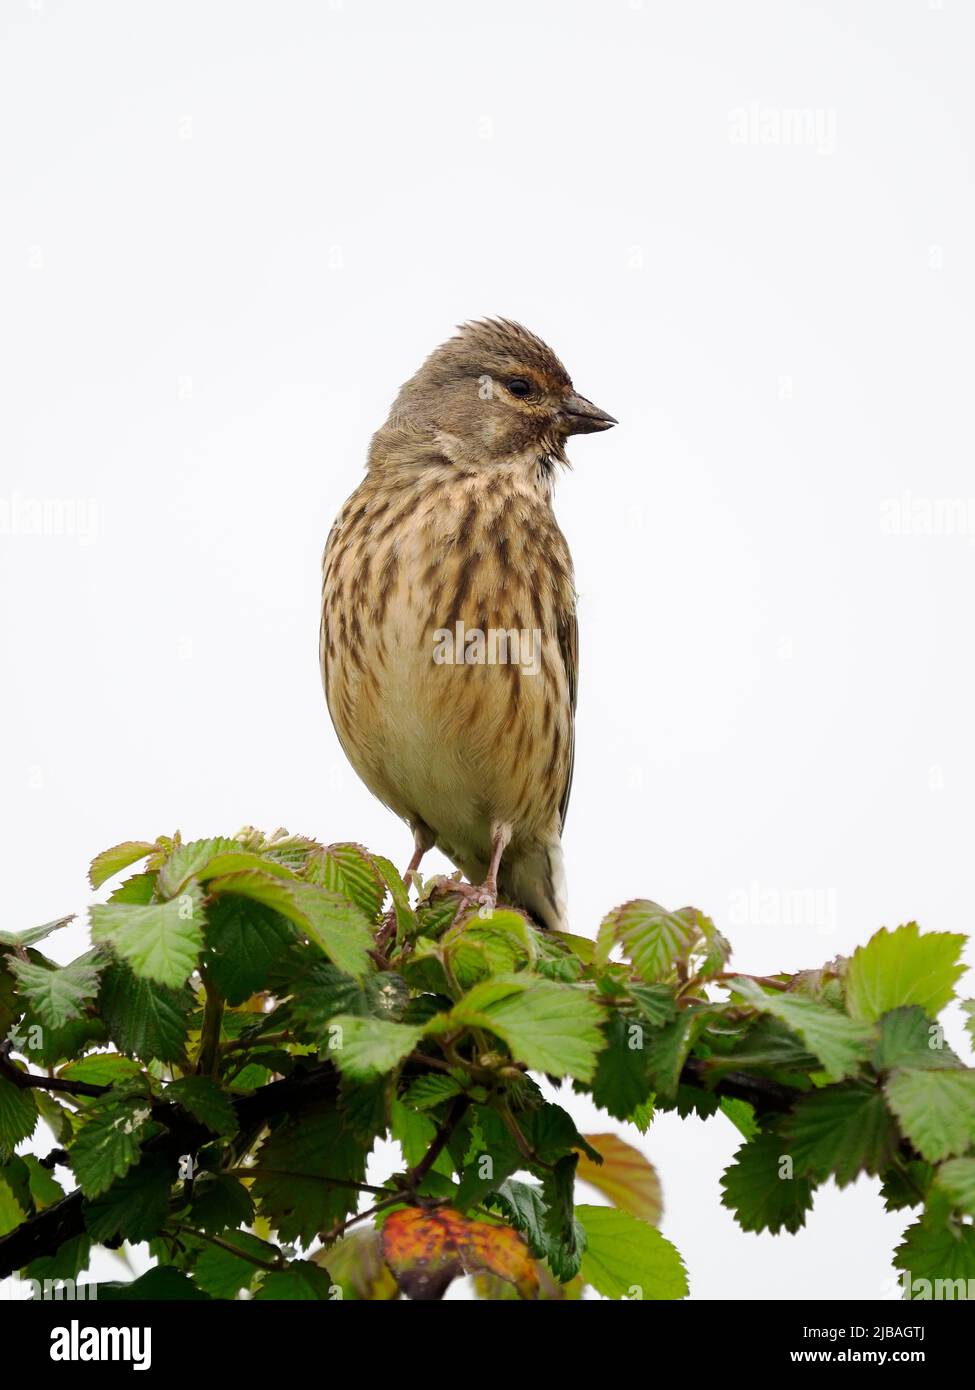 Linnett, Linaria cannabina, uccello singolo sul ramo, Warwickshire, maggio 2022 Foto Stock